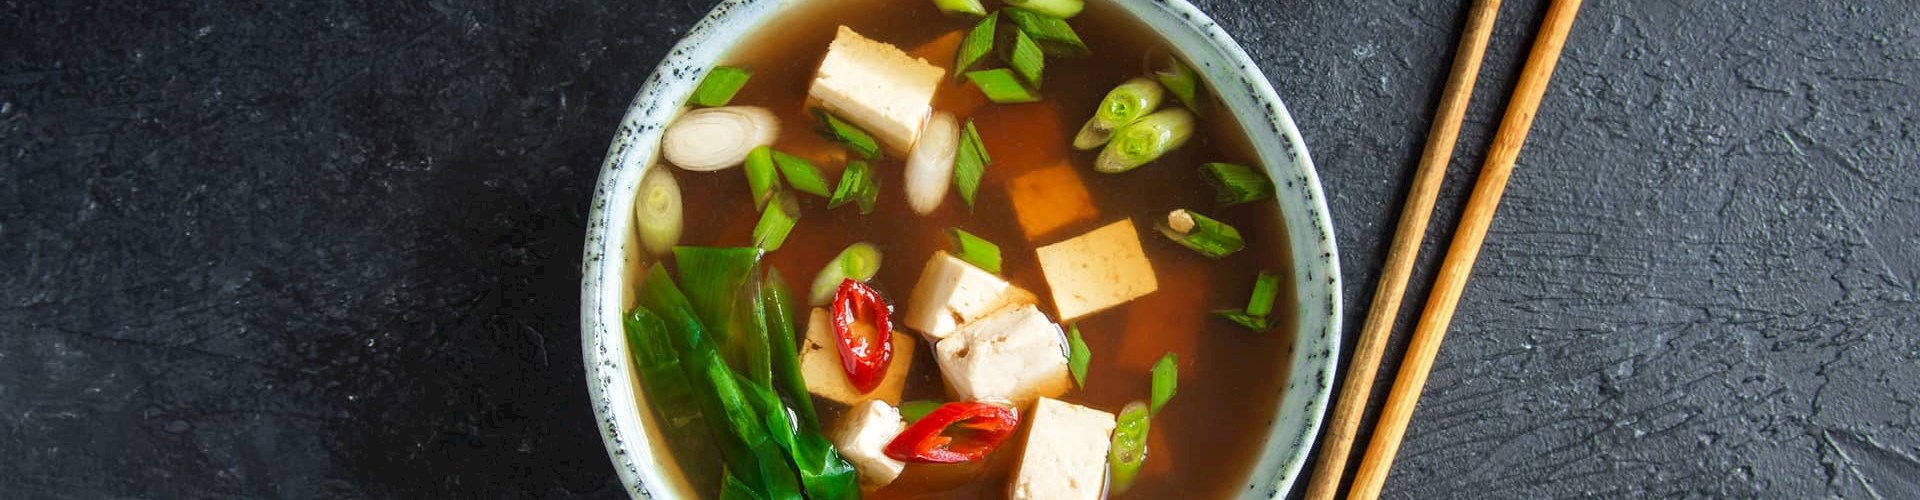 Japansk miso suppe, asiatisk vegetarisk madkursus i FOF Aarhus